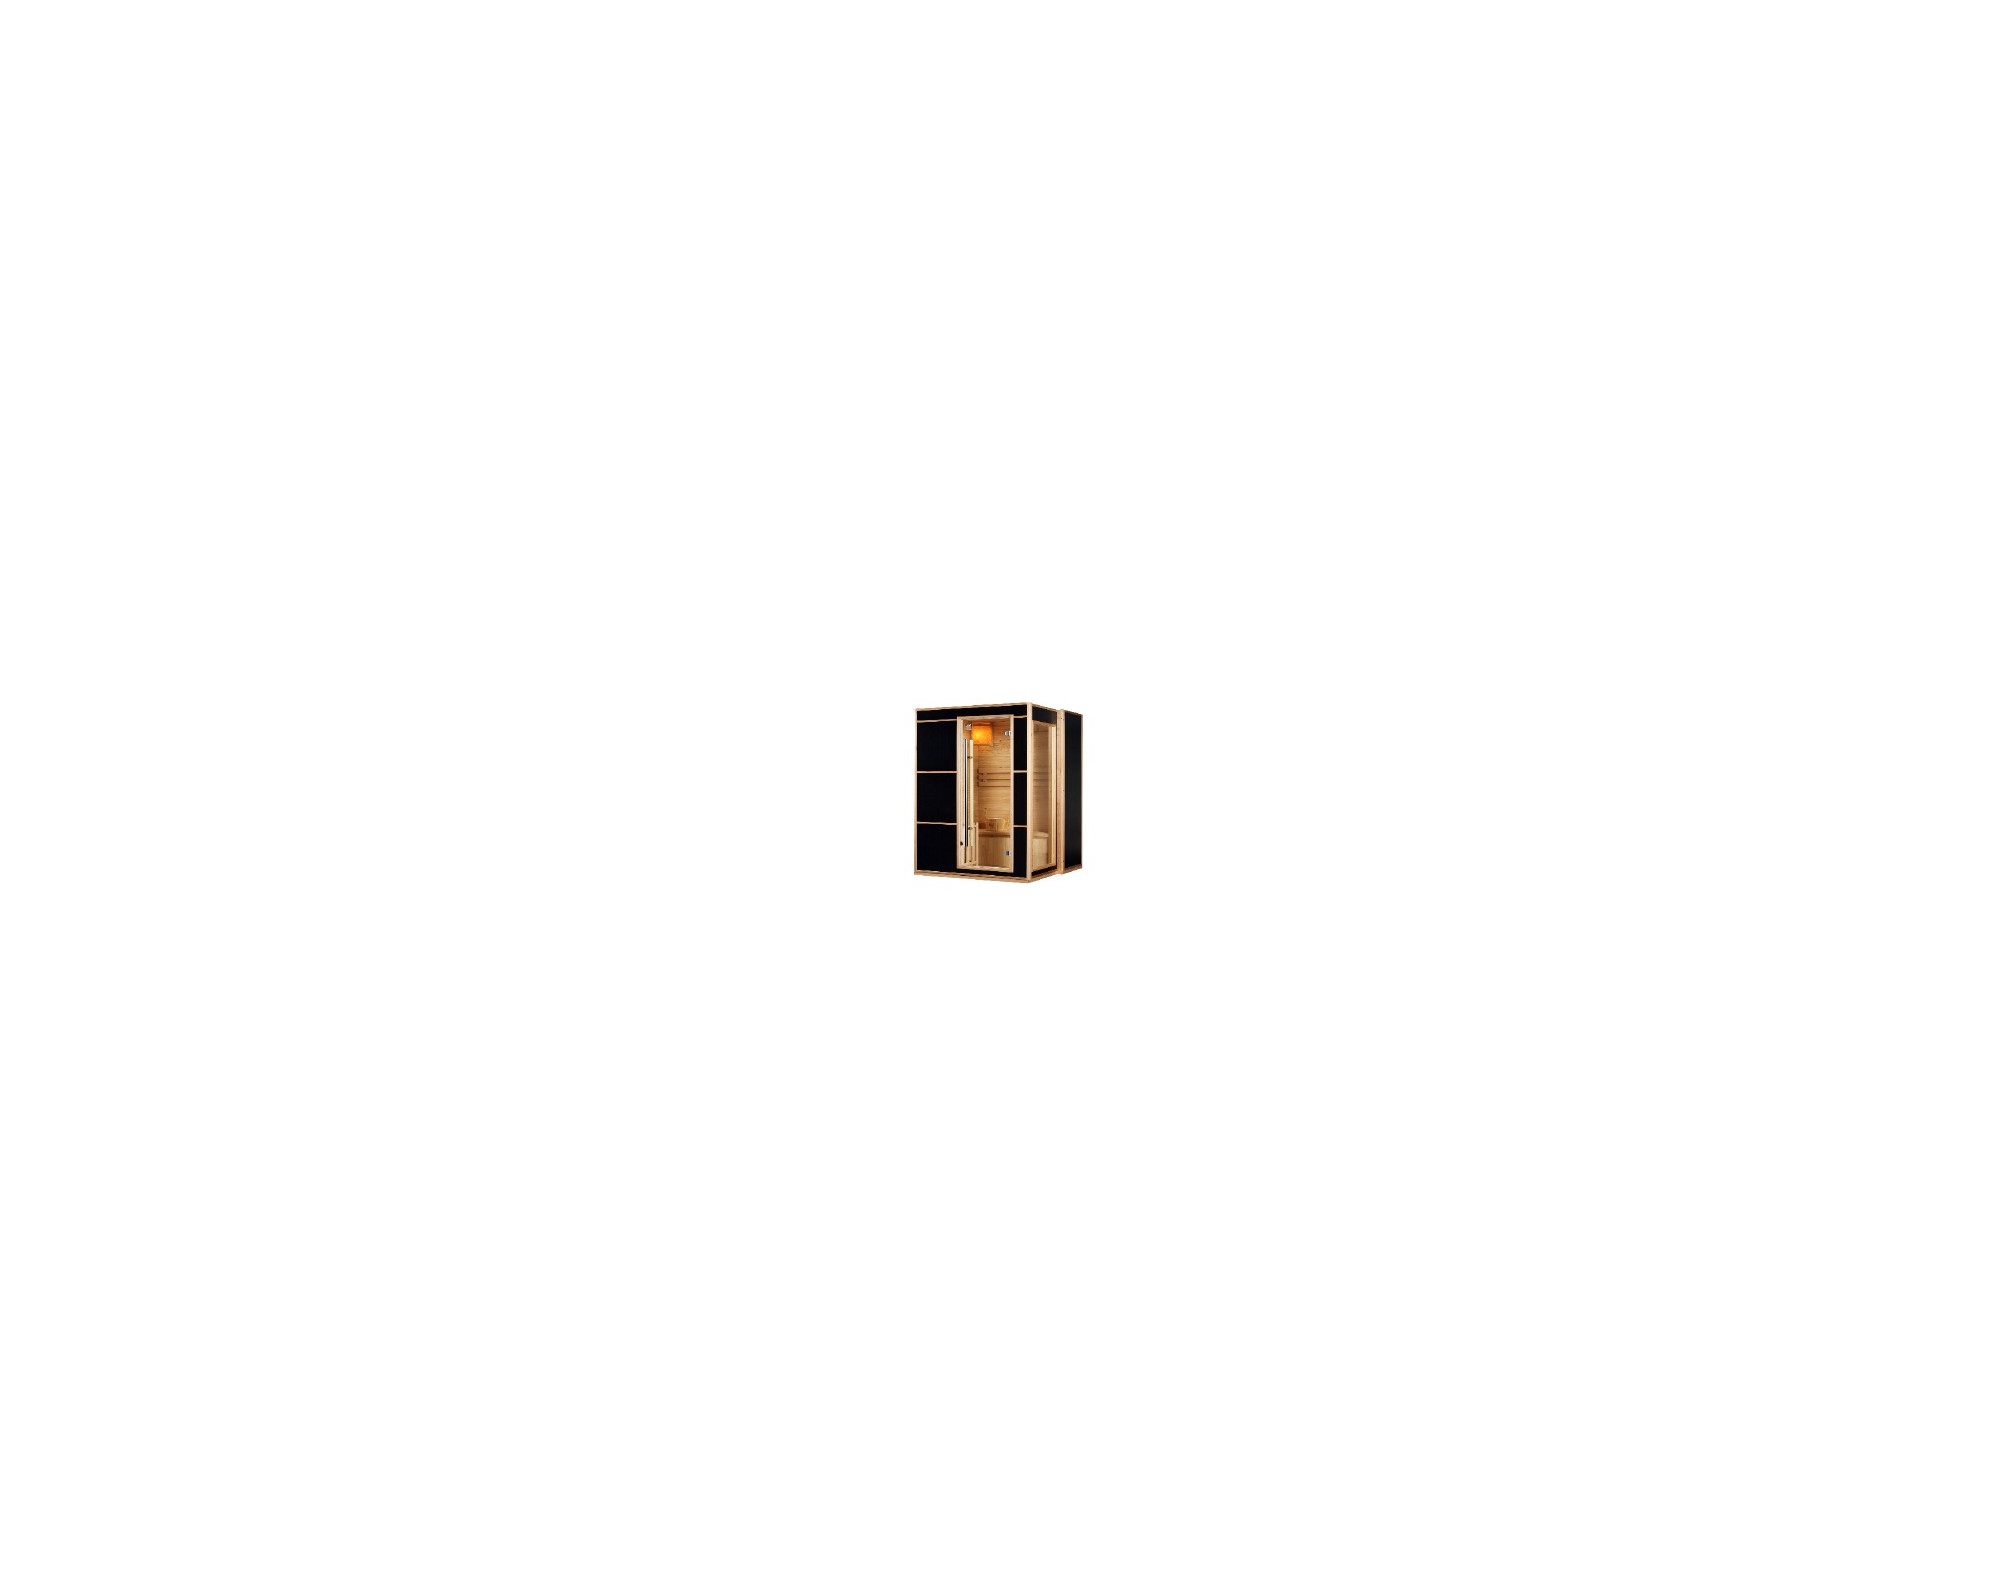 Infrarood + kachel Sauna Blazer L - 150x130x190 cm